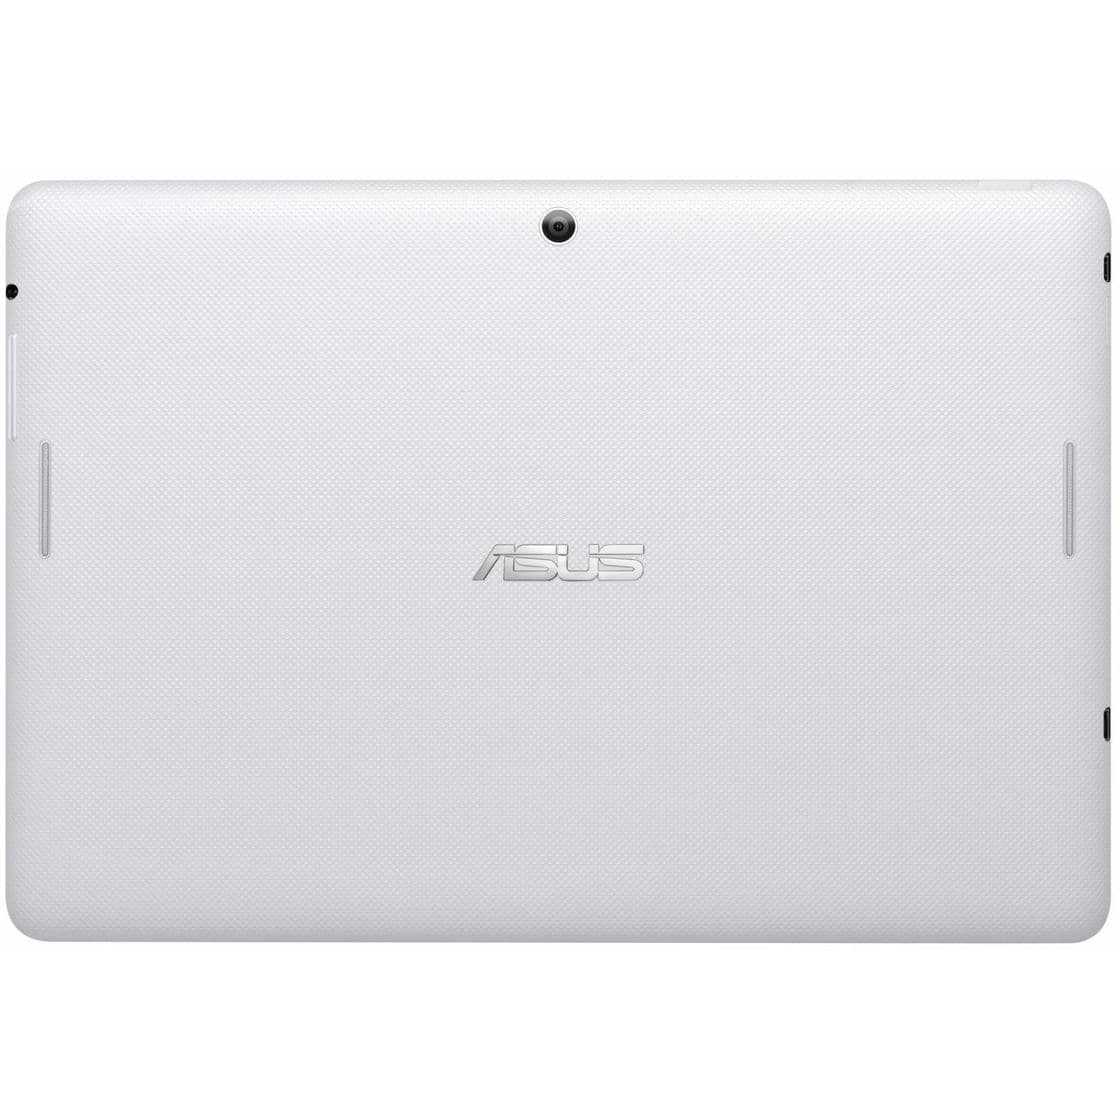 Asus memo pad fhd 10 me302kl 16gb lte (синий) - купить , скидки, цена, отзывы, обзор, характеристики - планшеты